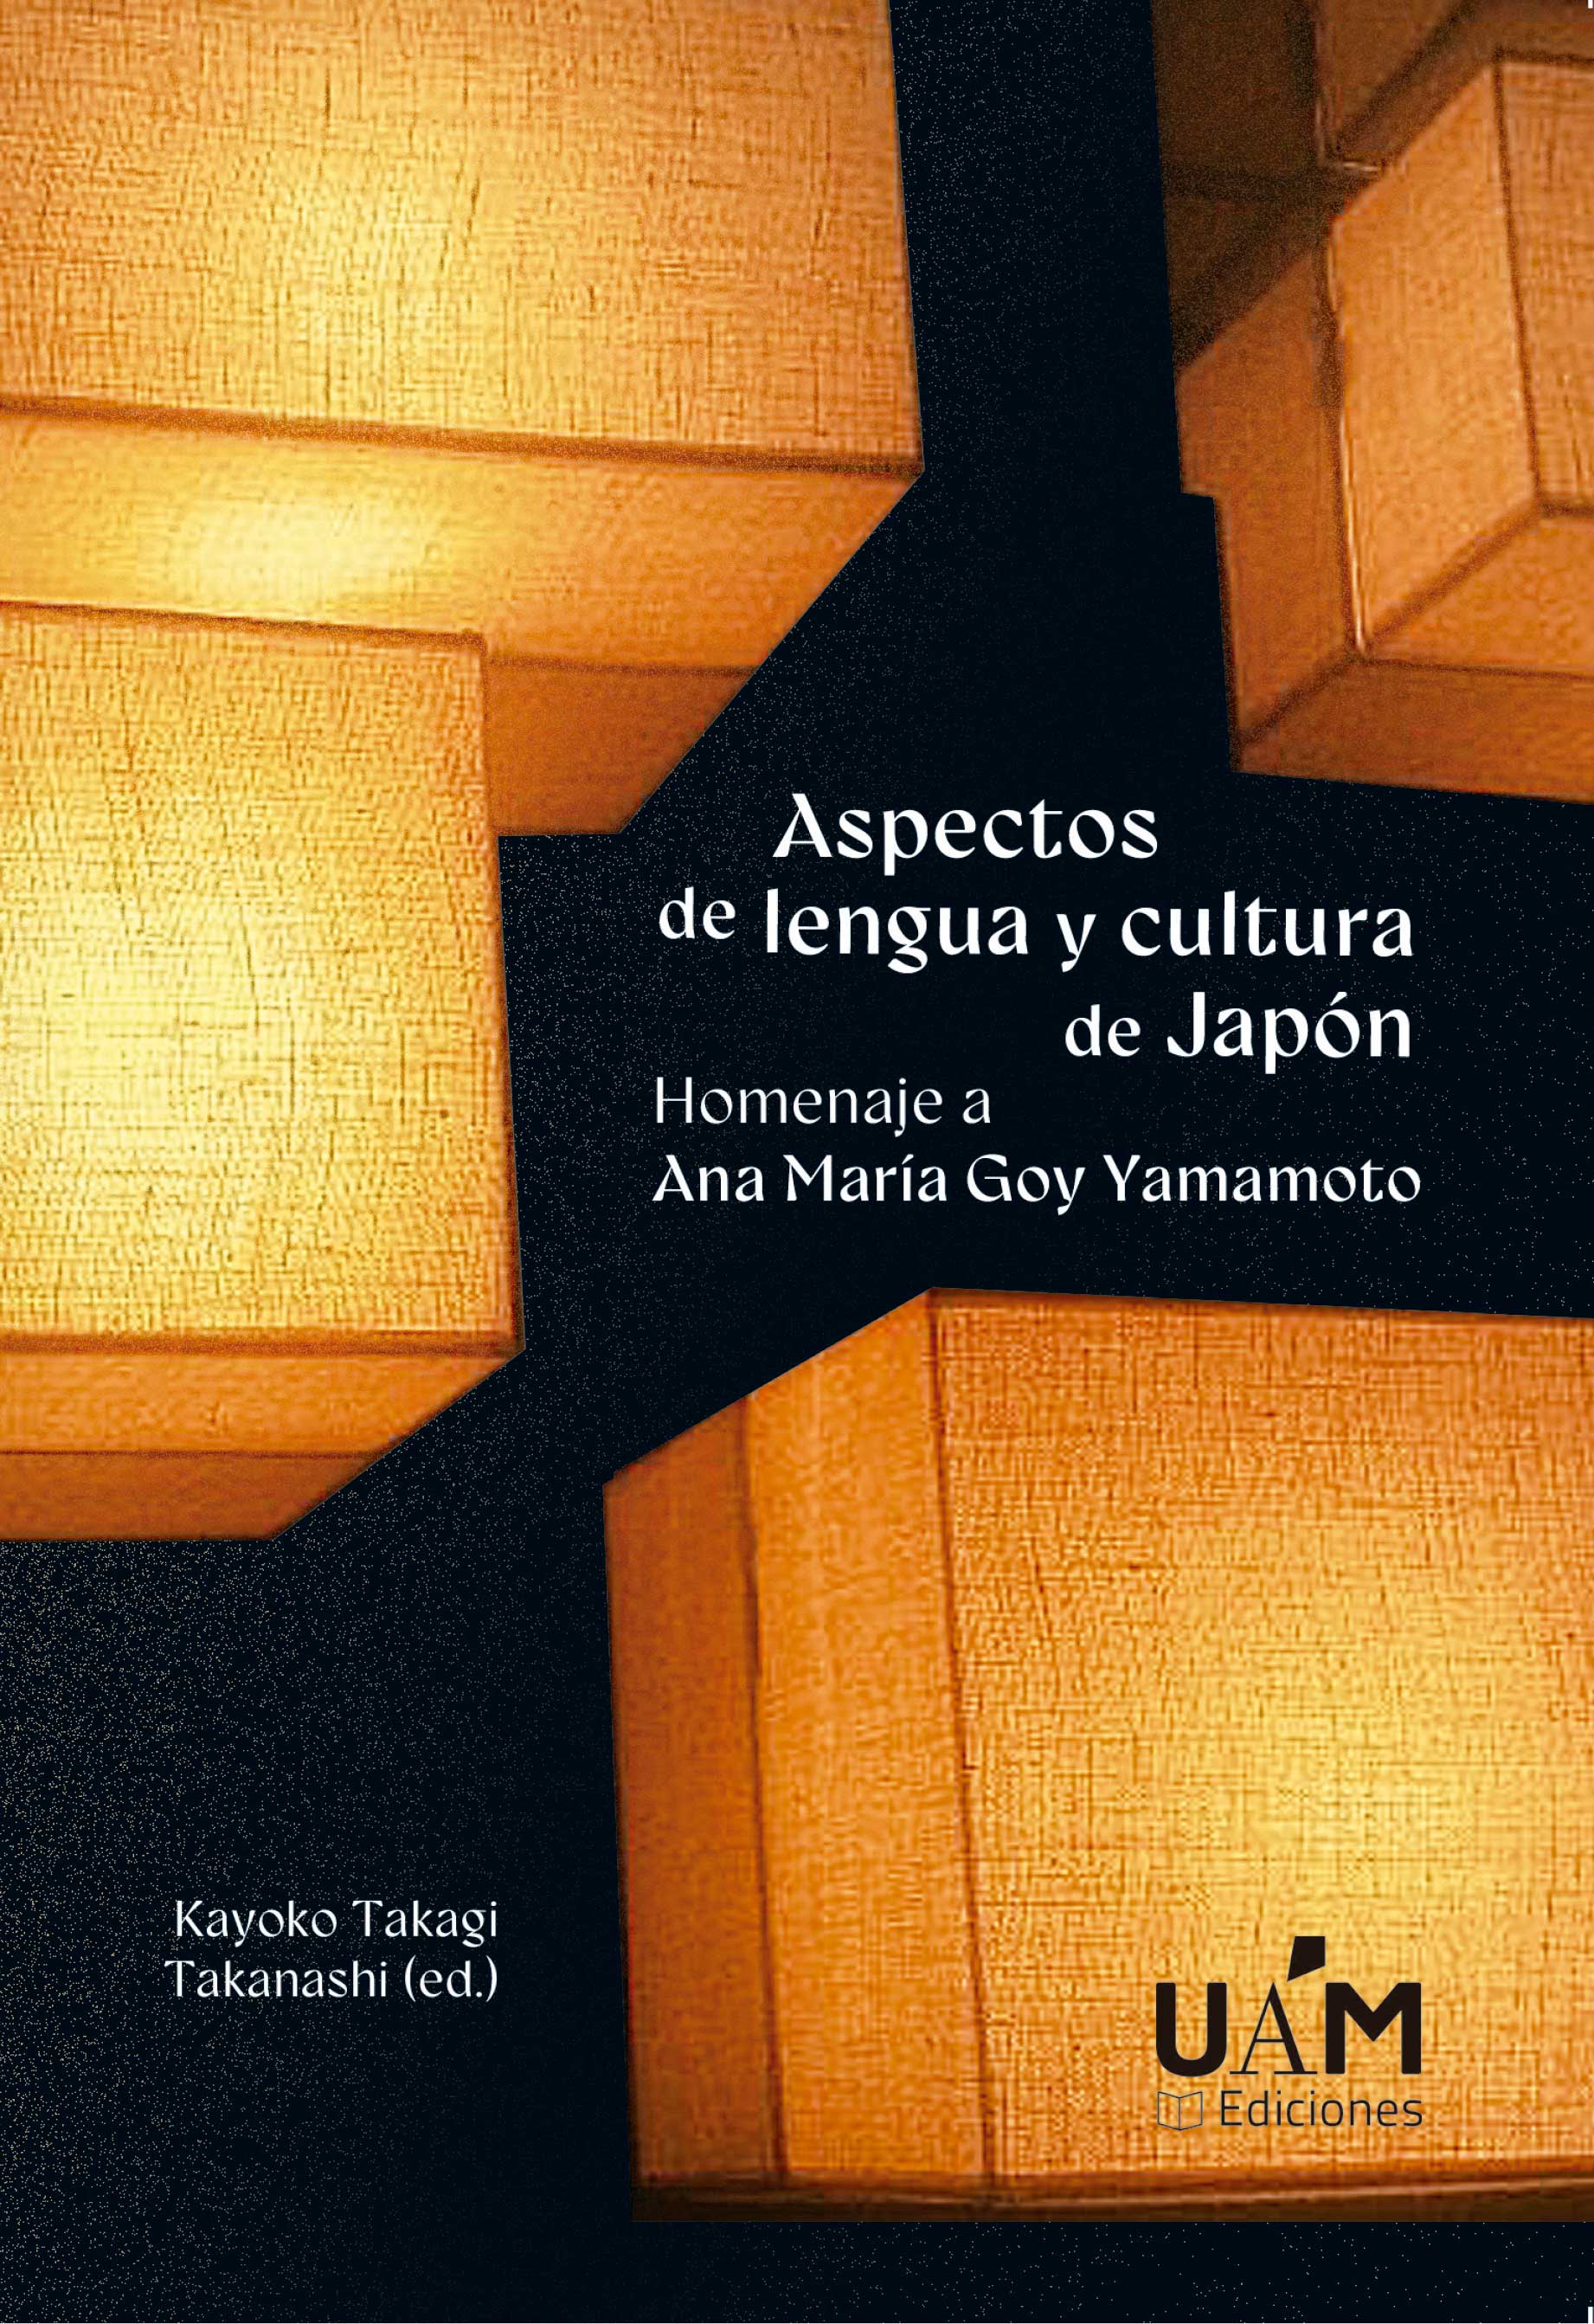 Imagen de portada del libro Aspectos de lengua y cultura de Japón